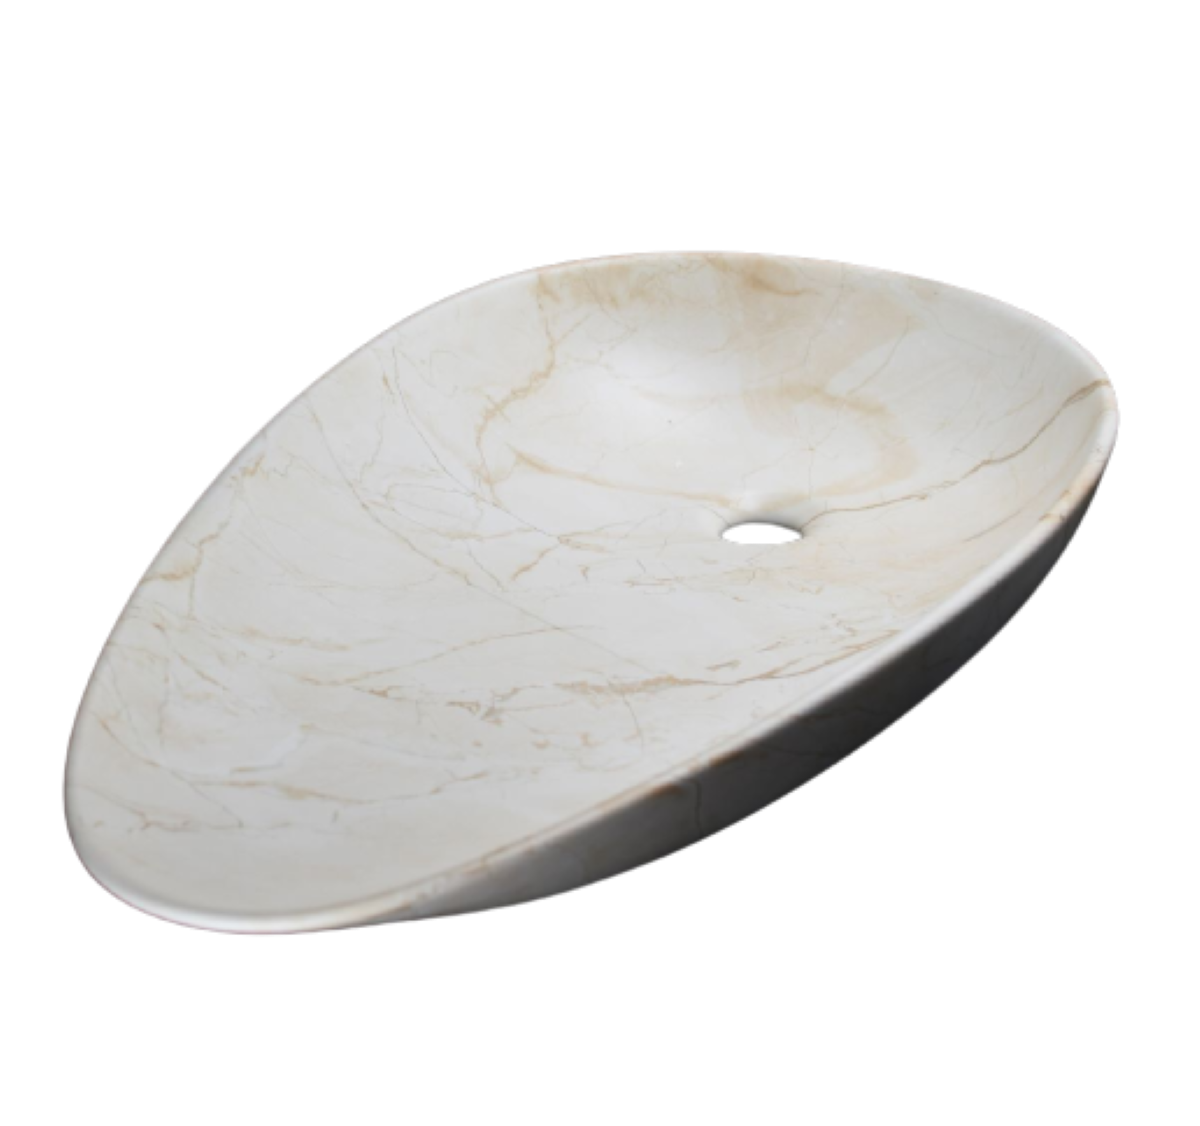 Lavabo Cerámico para Baño TE, acabado marmoleado en tono café. De sobreponer, con diseño europeo ideal para todo tipo de baños. Dimensiones 75.0 x 42.5 x 13.0 cms. (base x altura x profundidad)